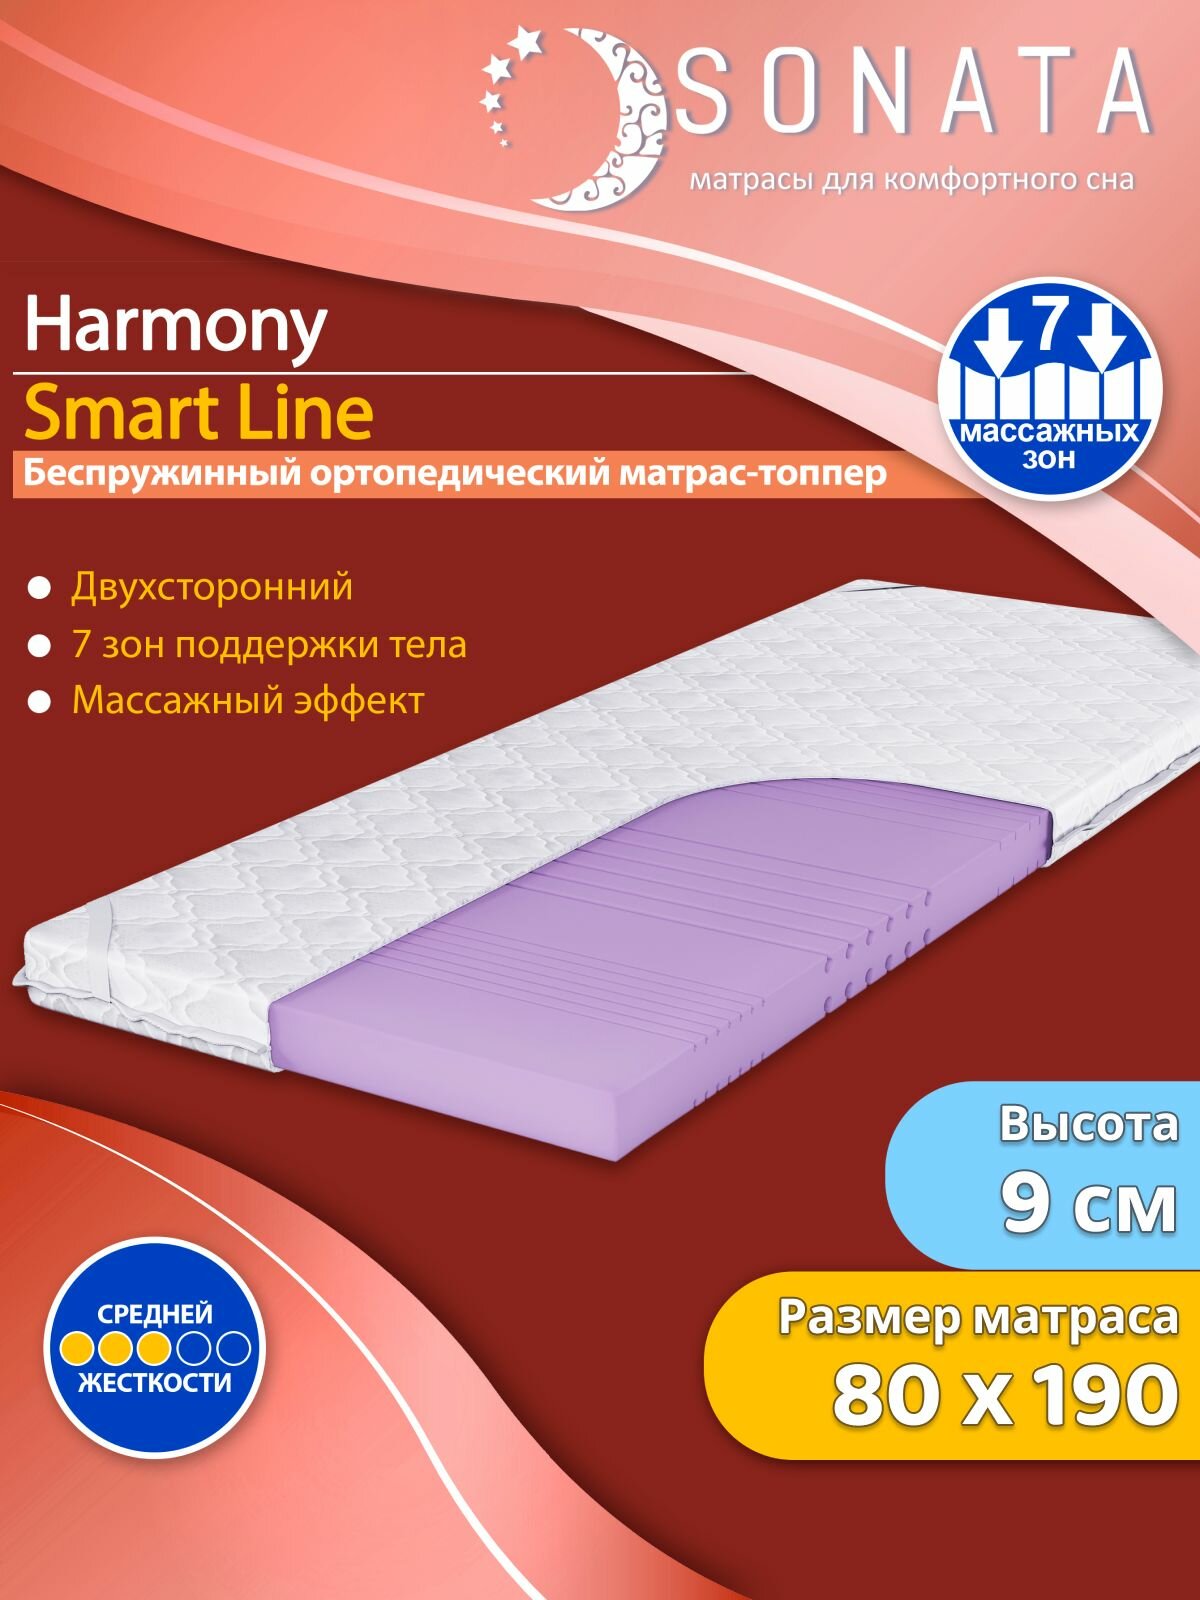 Топпер матрас 80х190 см SONATA ортопедический беспружинный односпальный тонкий матрац для дивана кровати высота 9 см с массажным эффектом